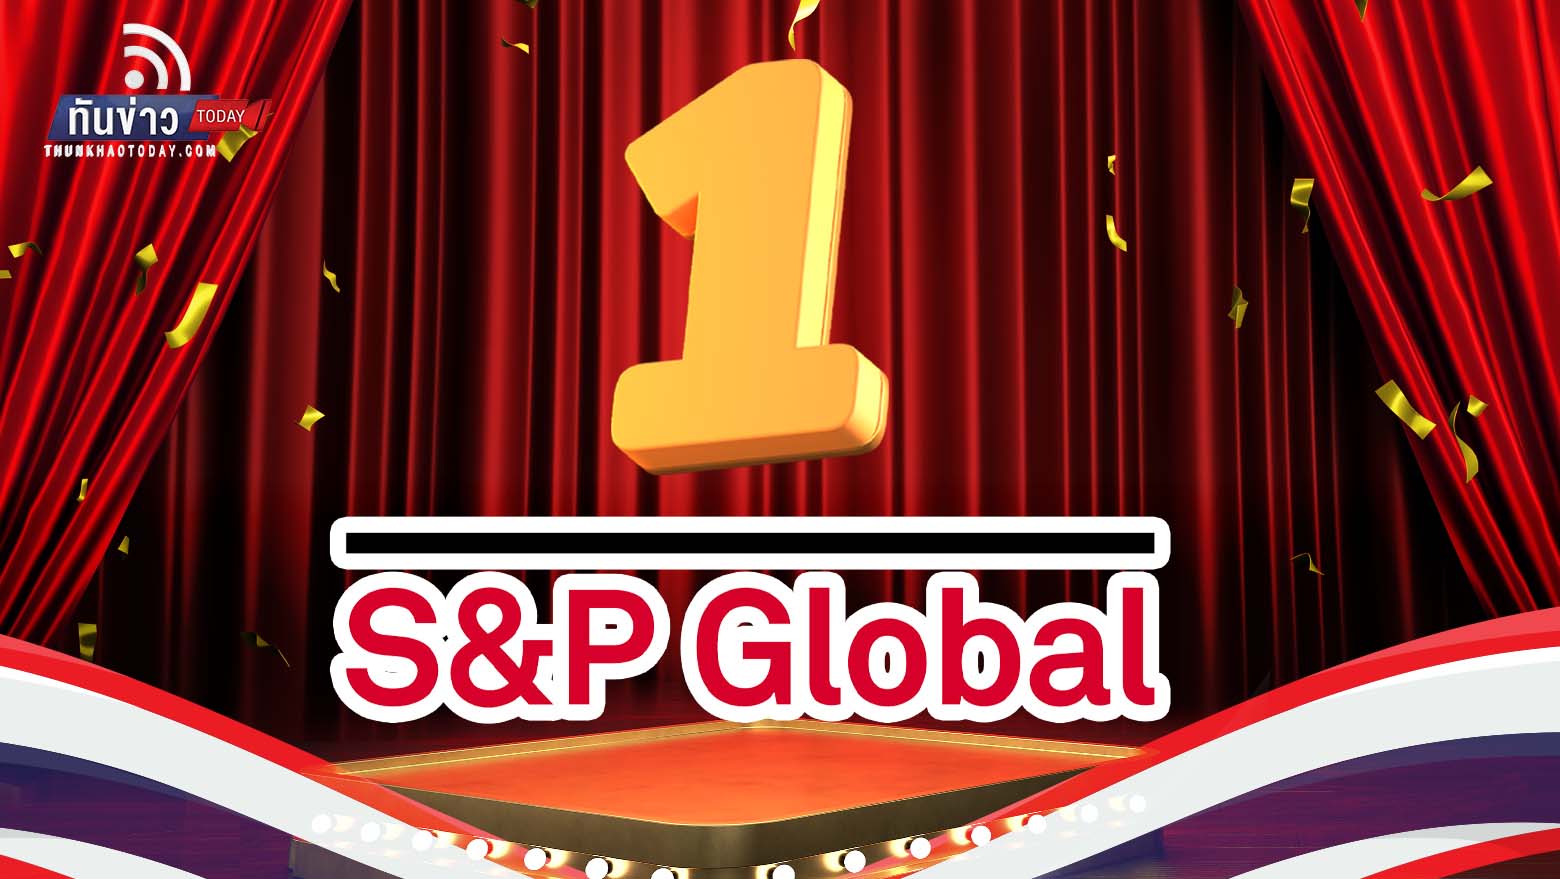 ไทยยืนหนึ่งเป็นผู้นำด้านความยั่งยืนจาก S&P Global โดย 12 บริษัทอยู่ในระดับ Gold Class มากที่สุดเป็นอันดับหนึ่งของโลก